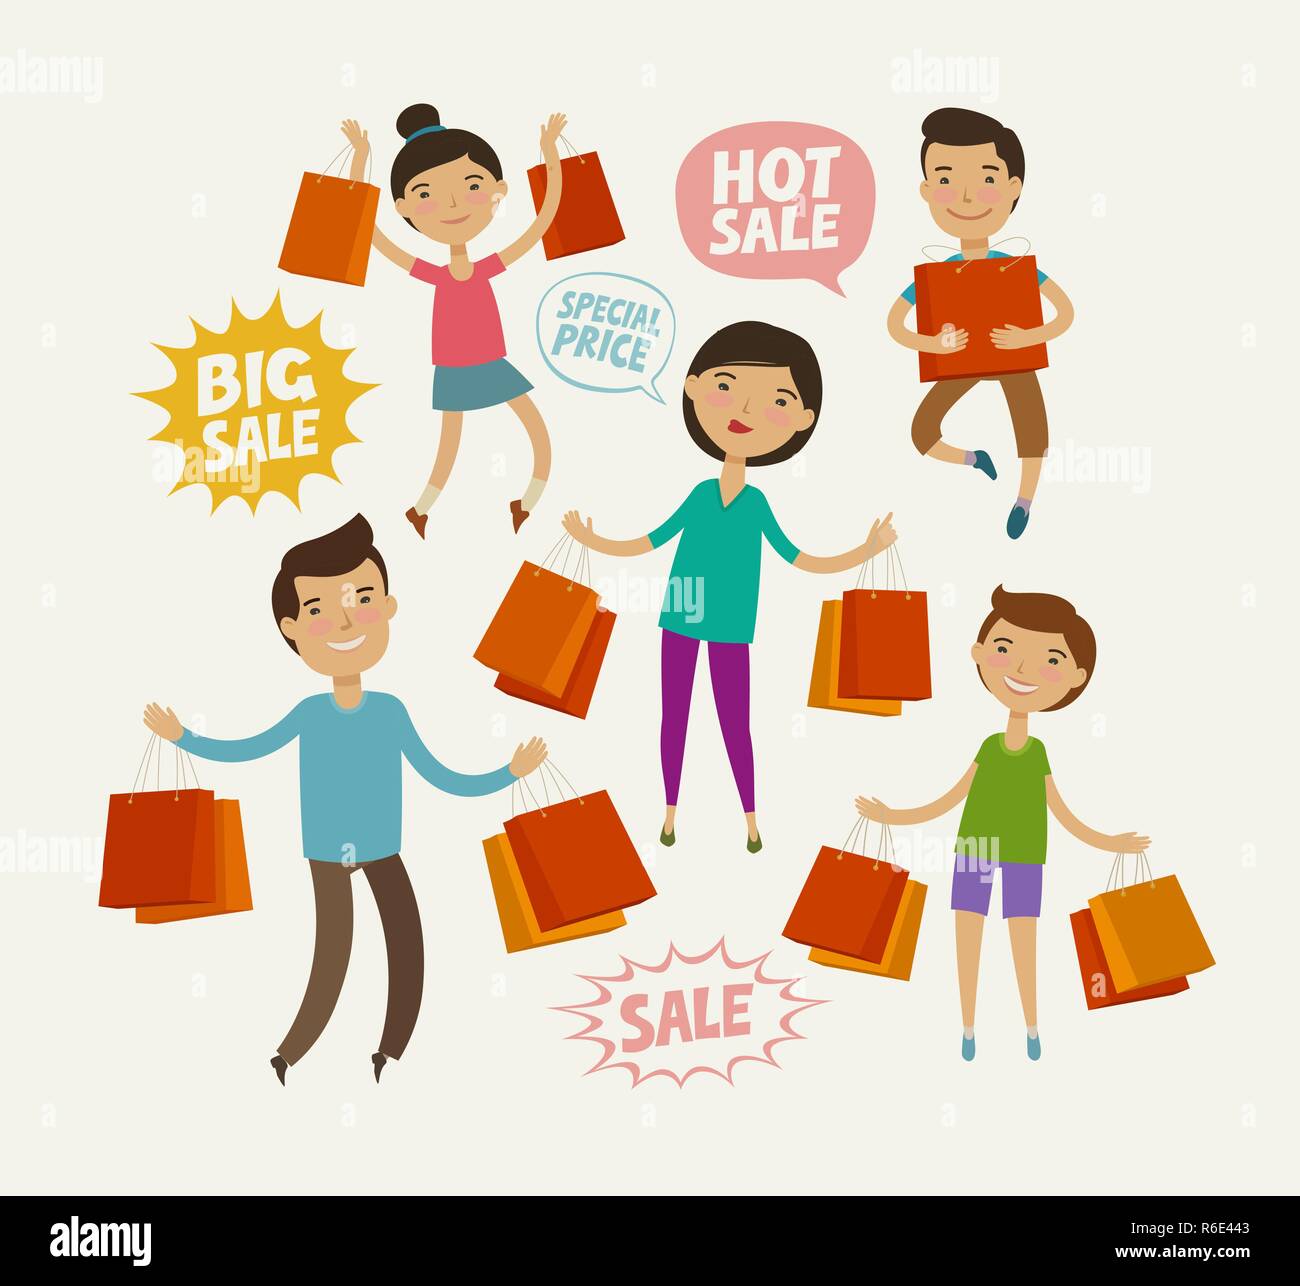 La gente en la venta. Vender, concepto de compras. Divertida caricatura ilustración vectorial Ilustración del Vector